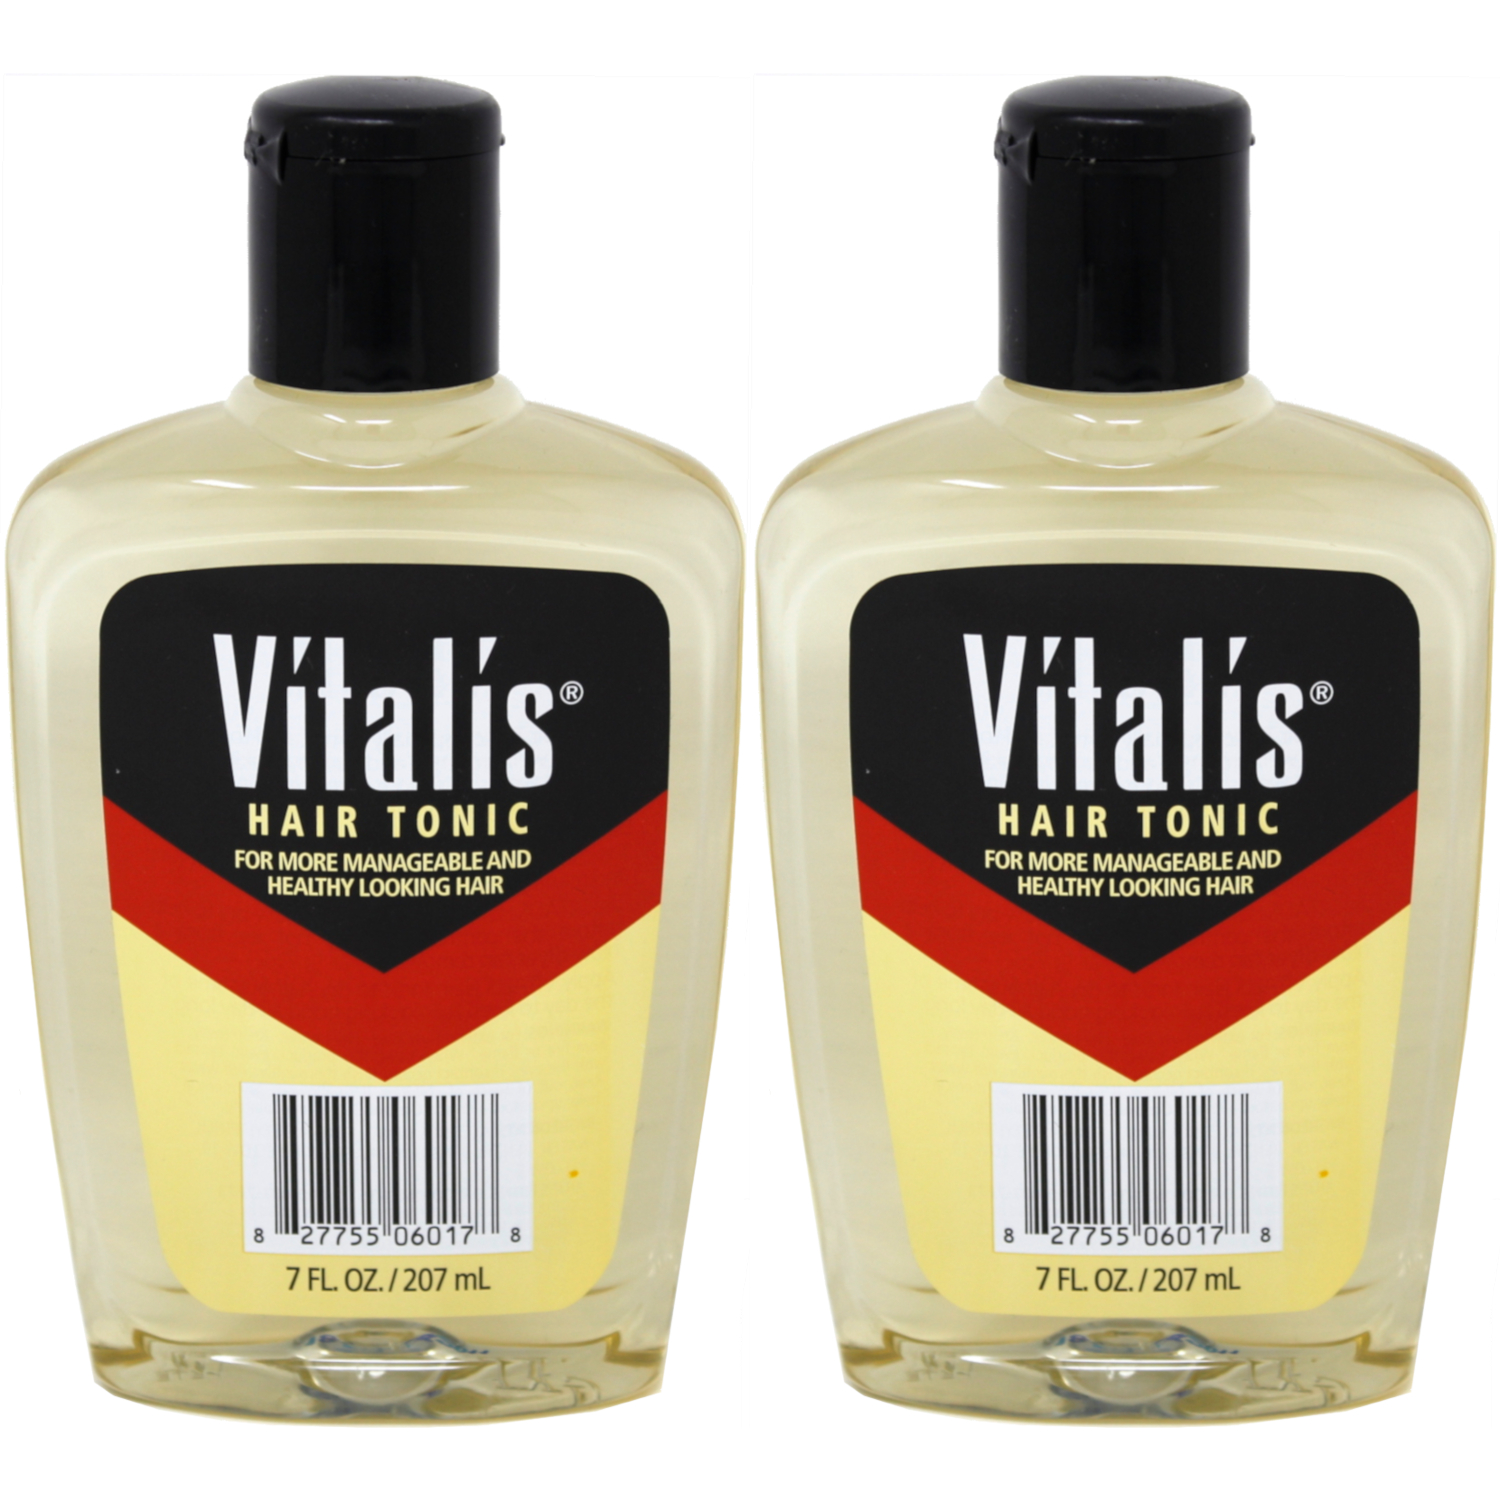 2 Pack Vitalis Hair Tonic For Men 7 Fl Oz Each 827755060178 Ebay